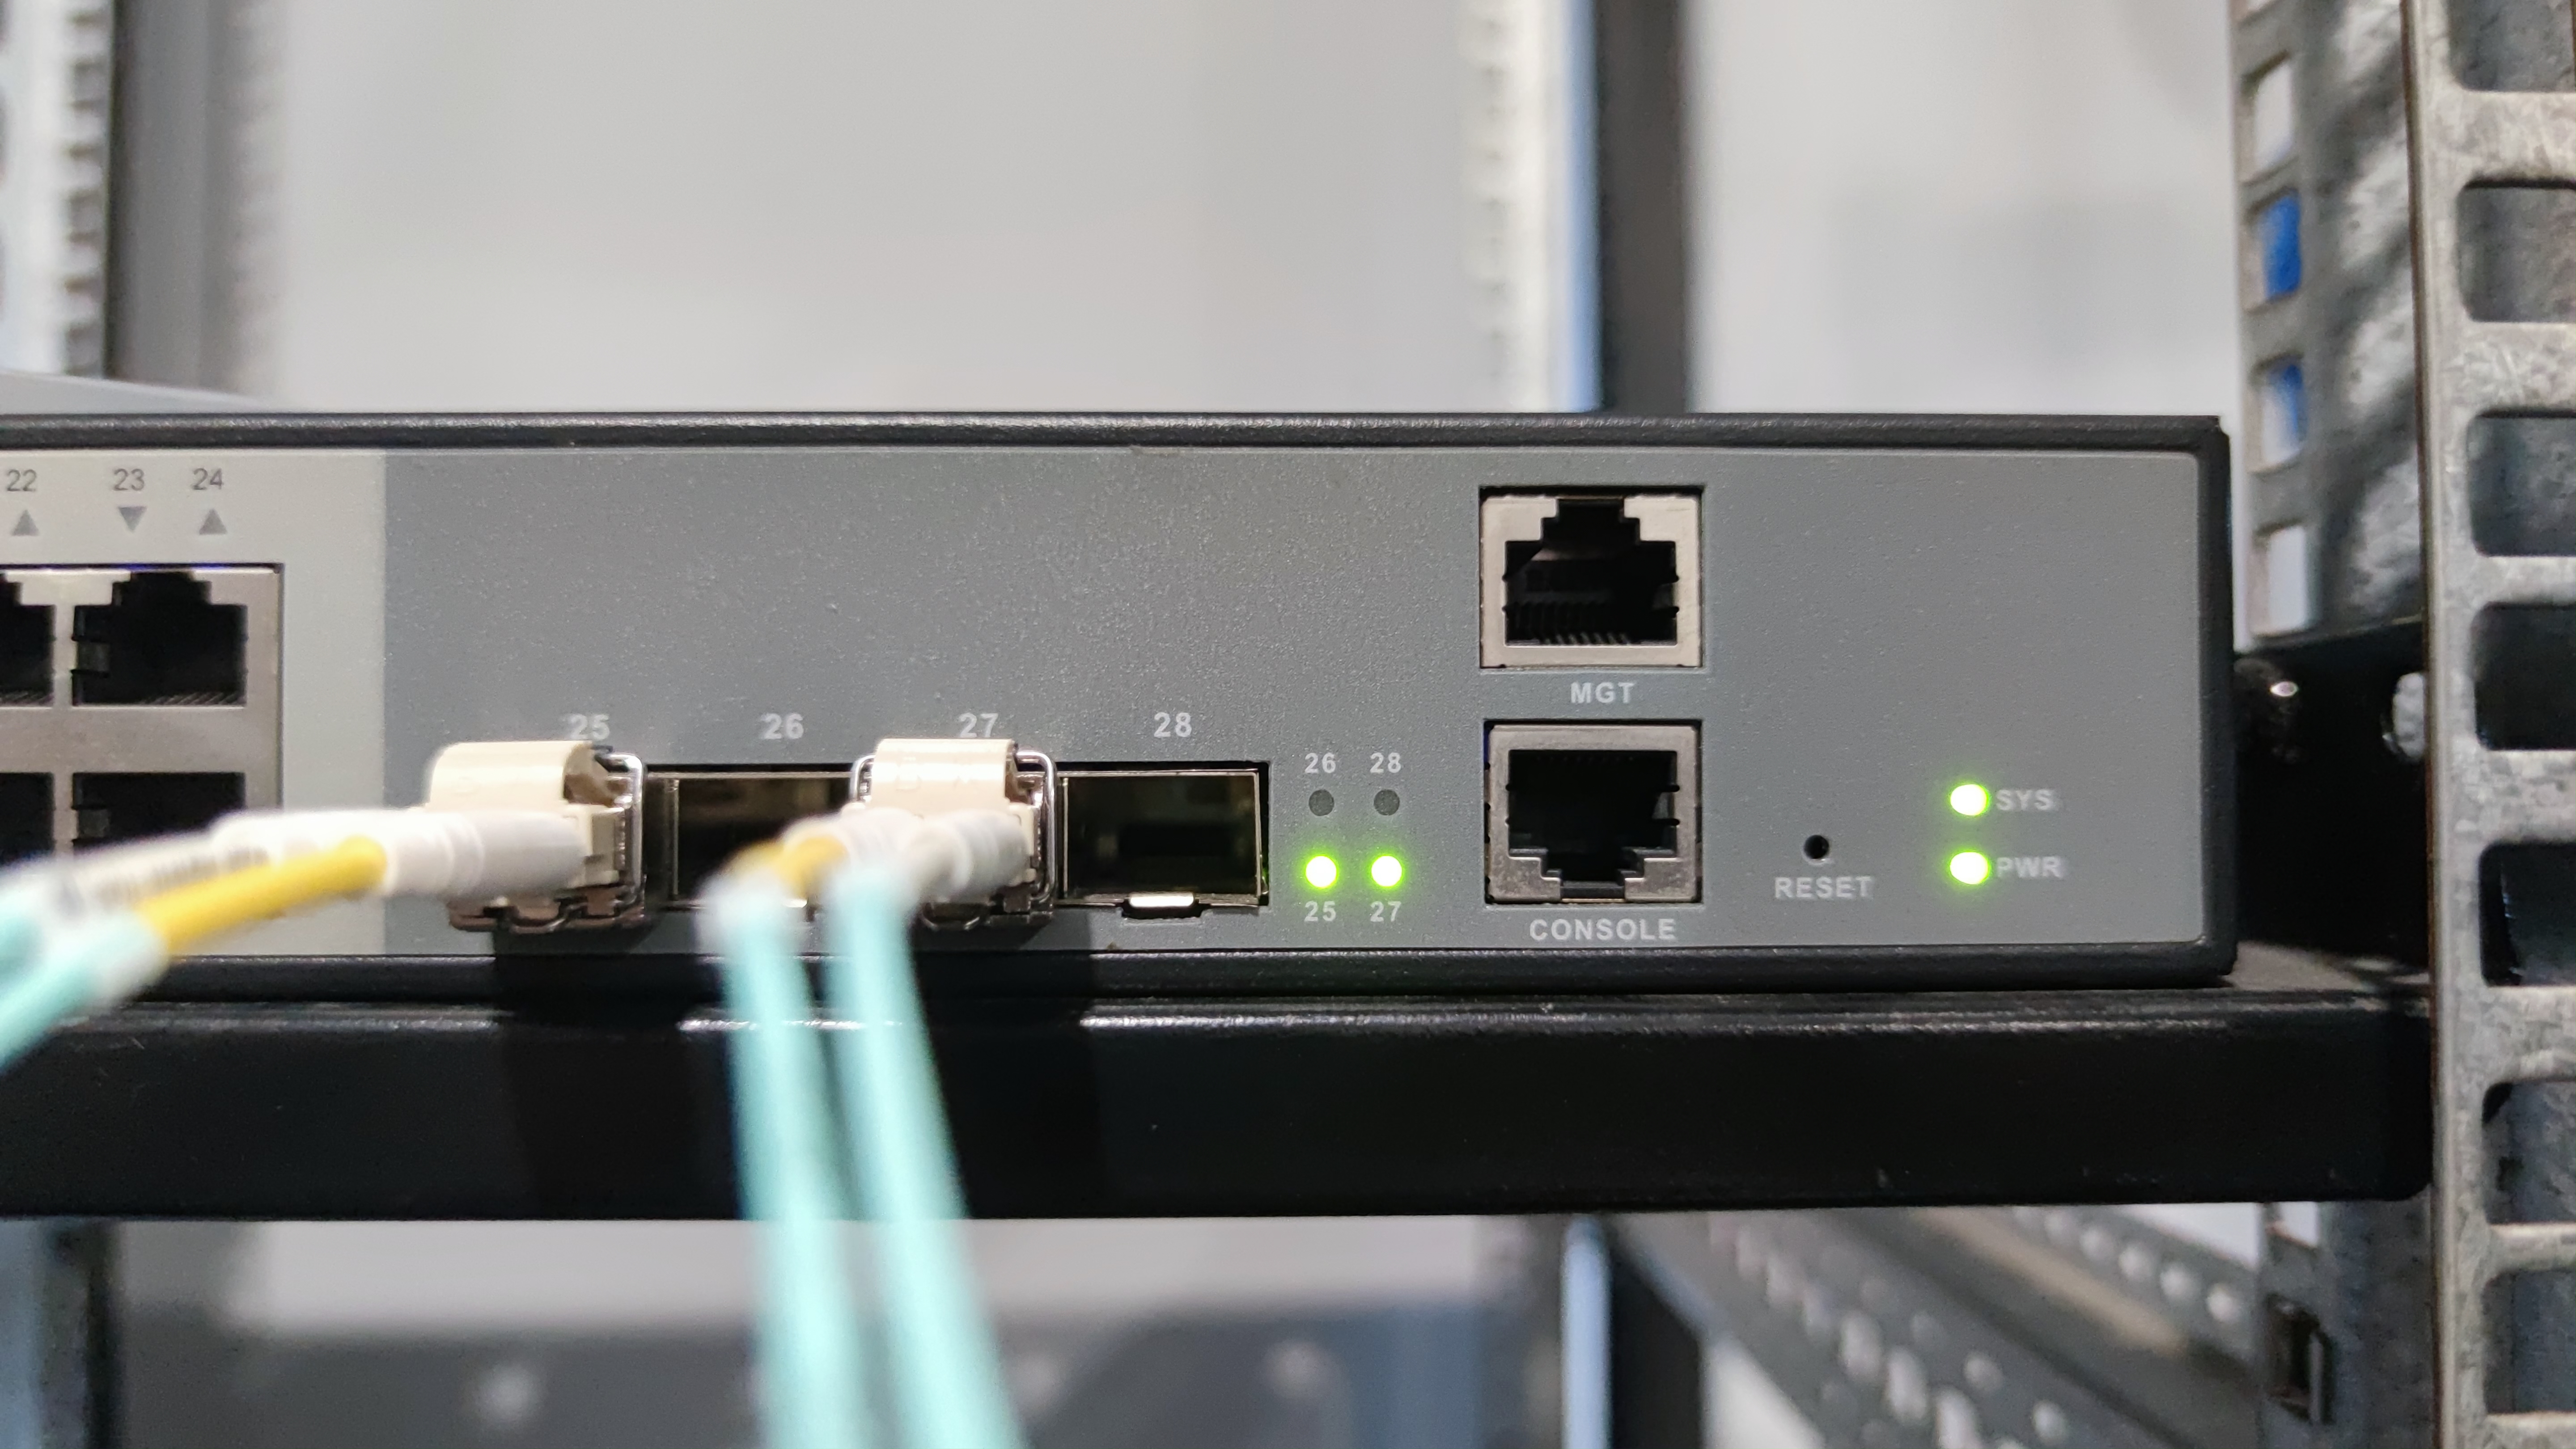 16 Port L2+ Switch, with 4 x 10Gb SFP+ Uplinks, S3900-24F4S-R 